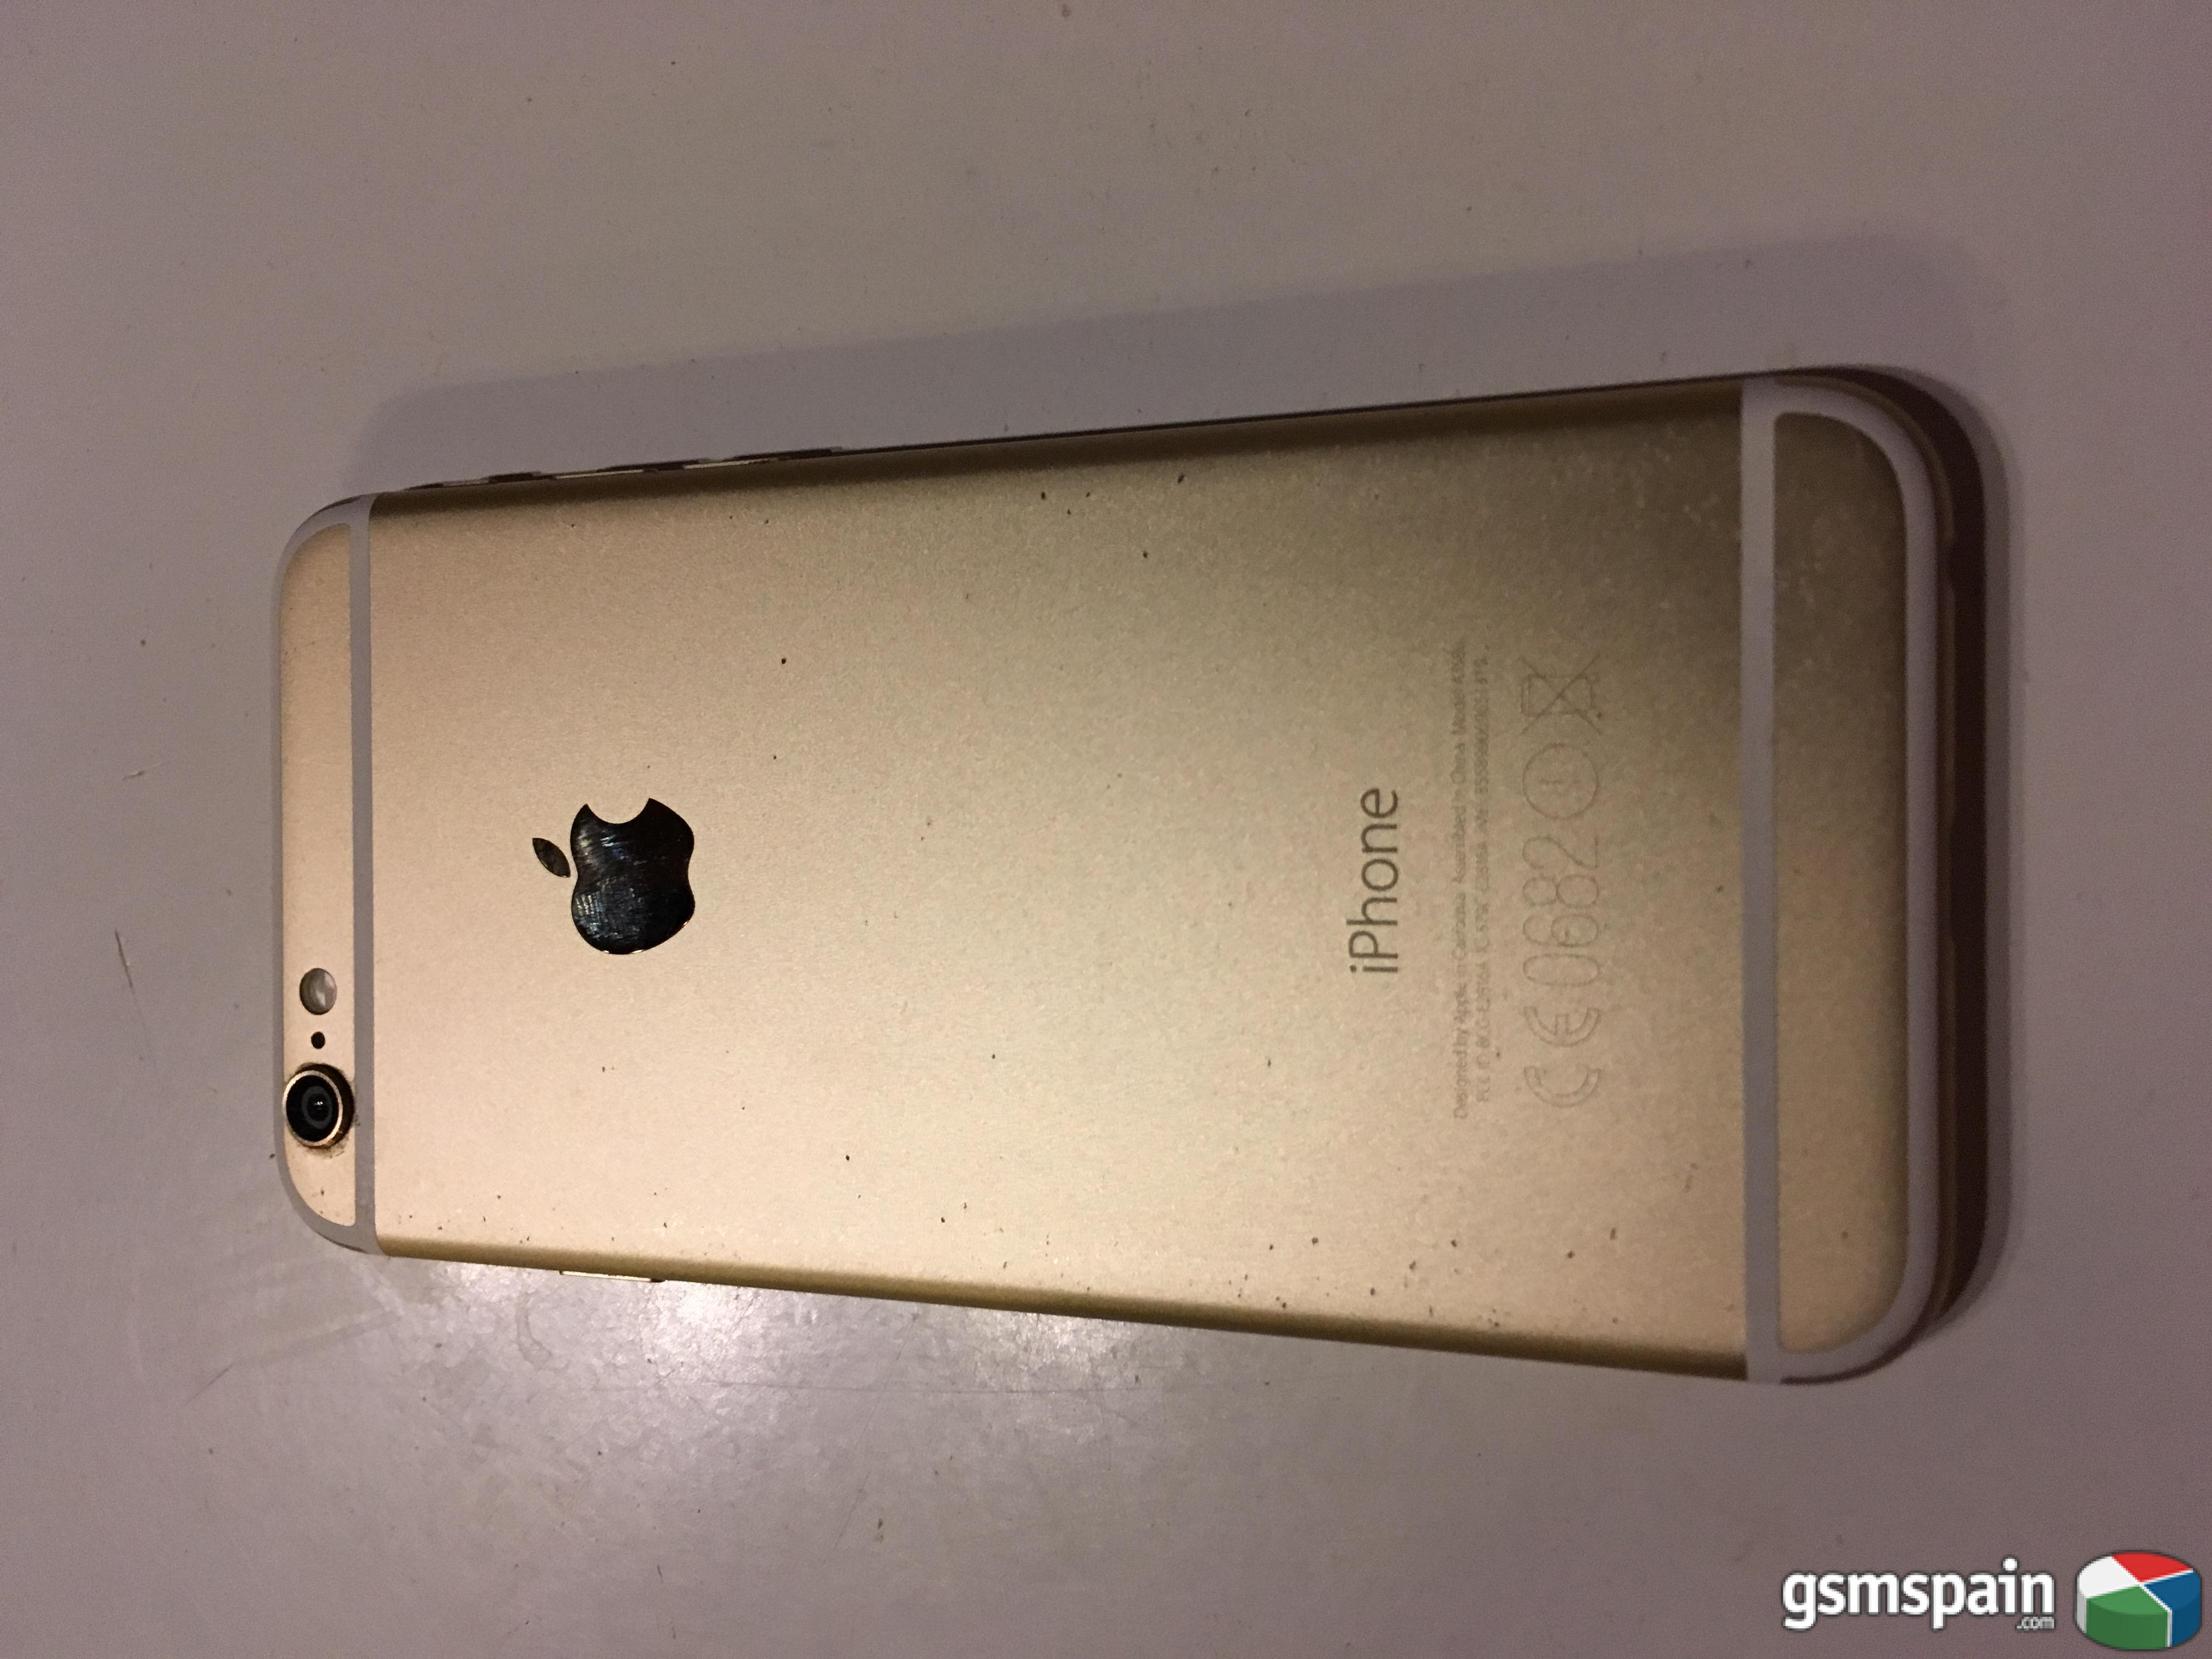 [VENDO] iPhone 6 16GB garanta Apple Care Plus